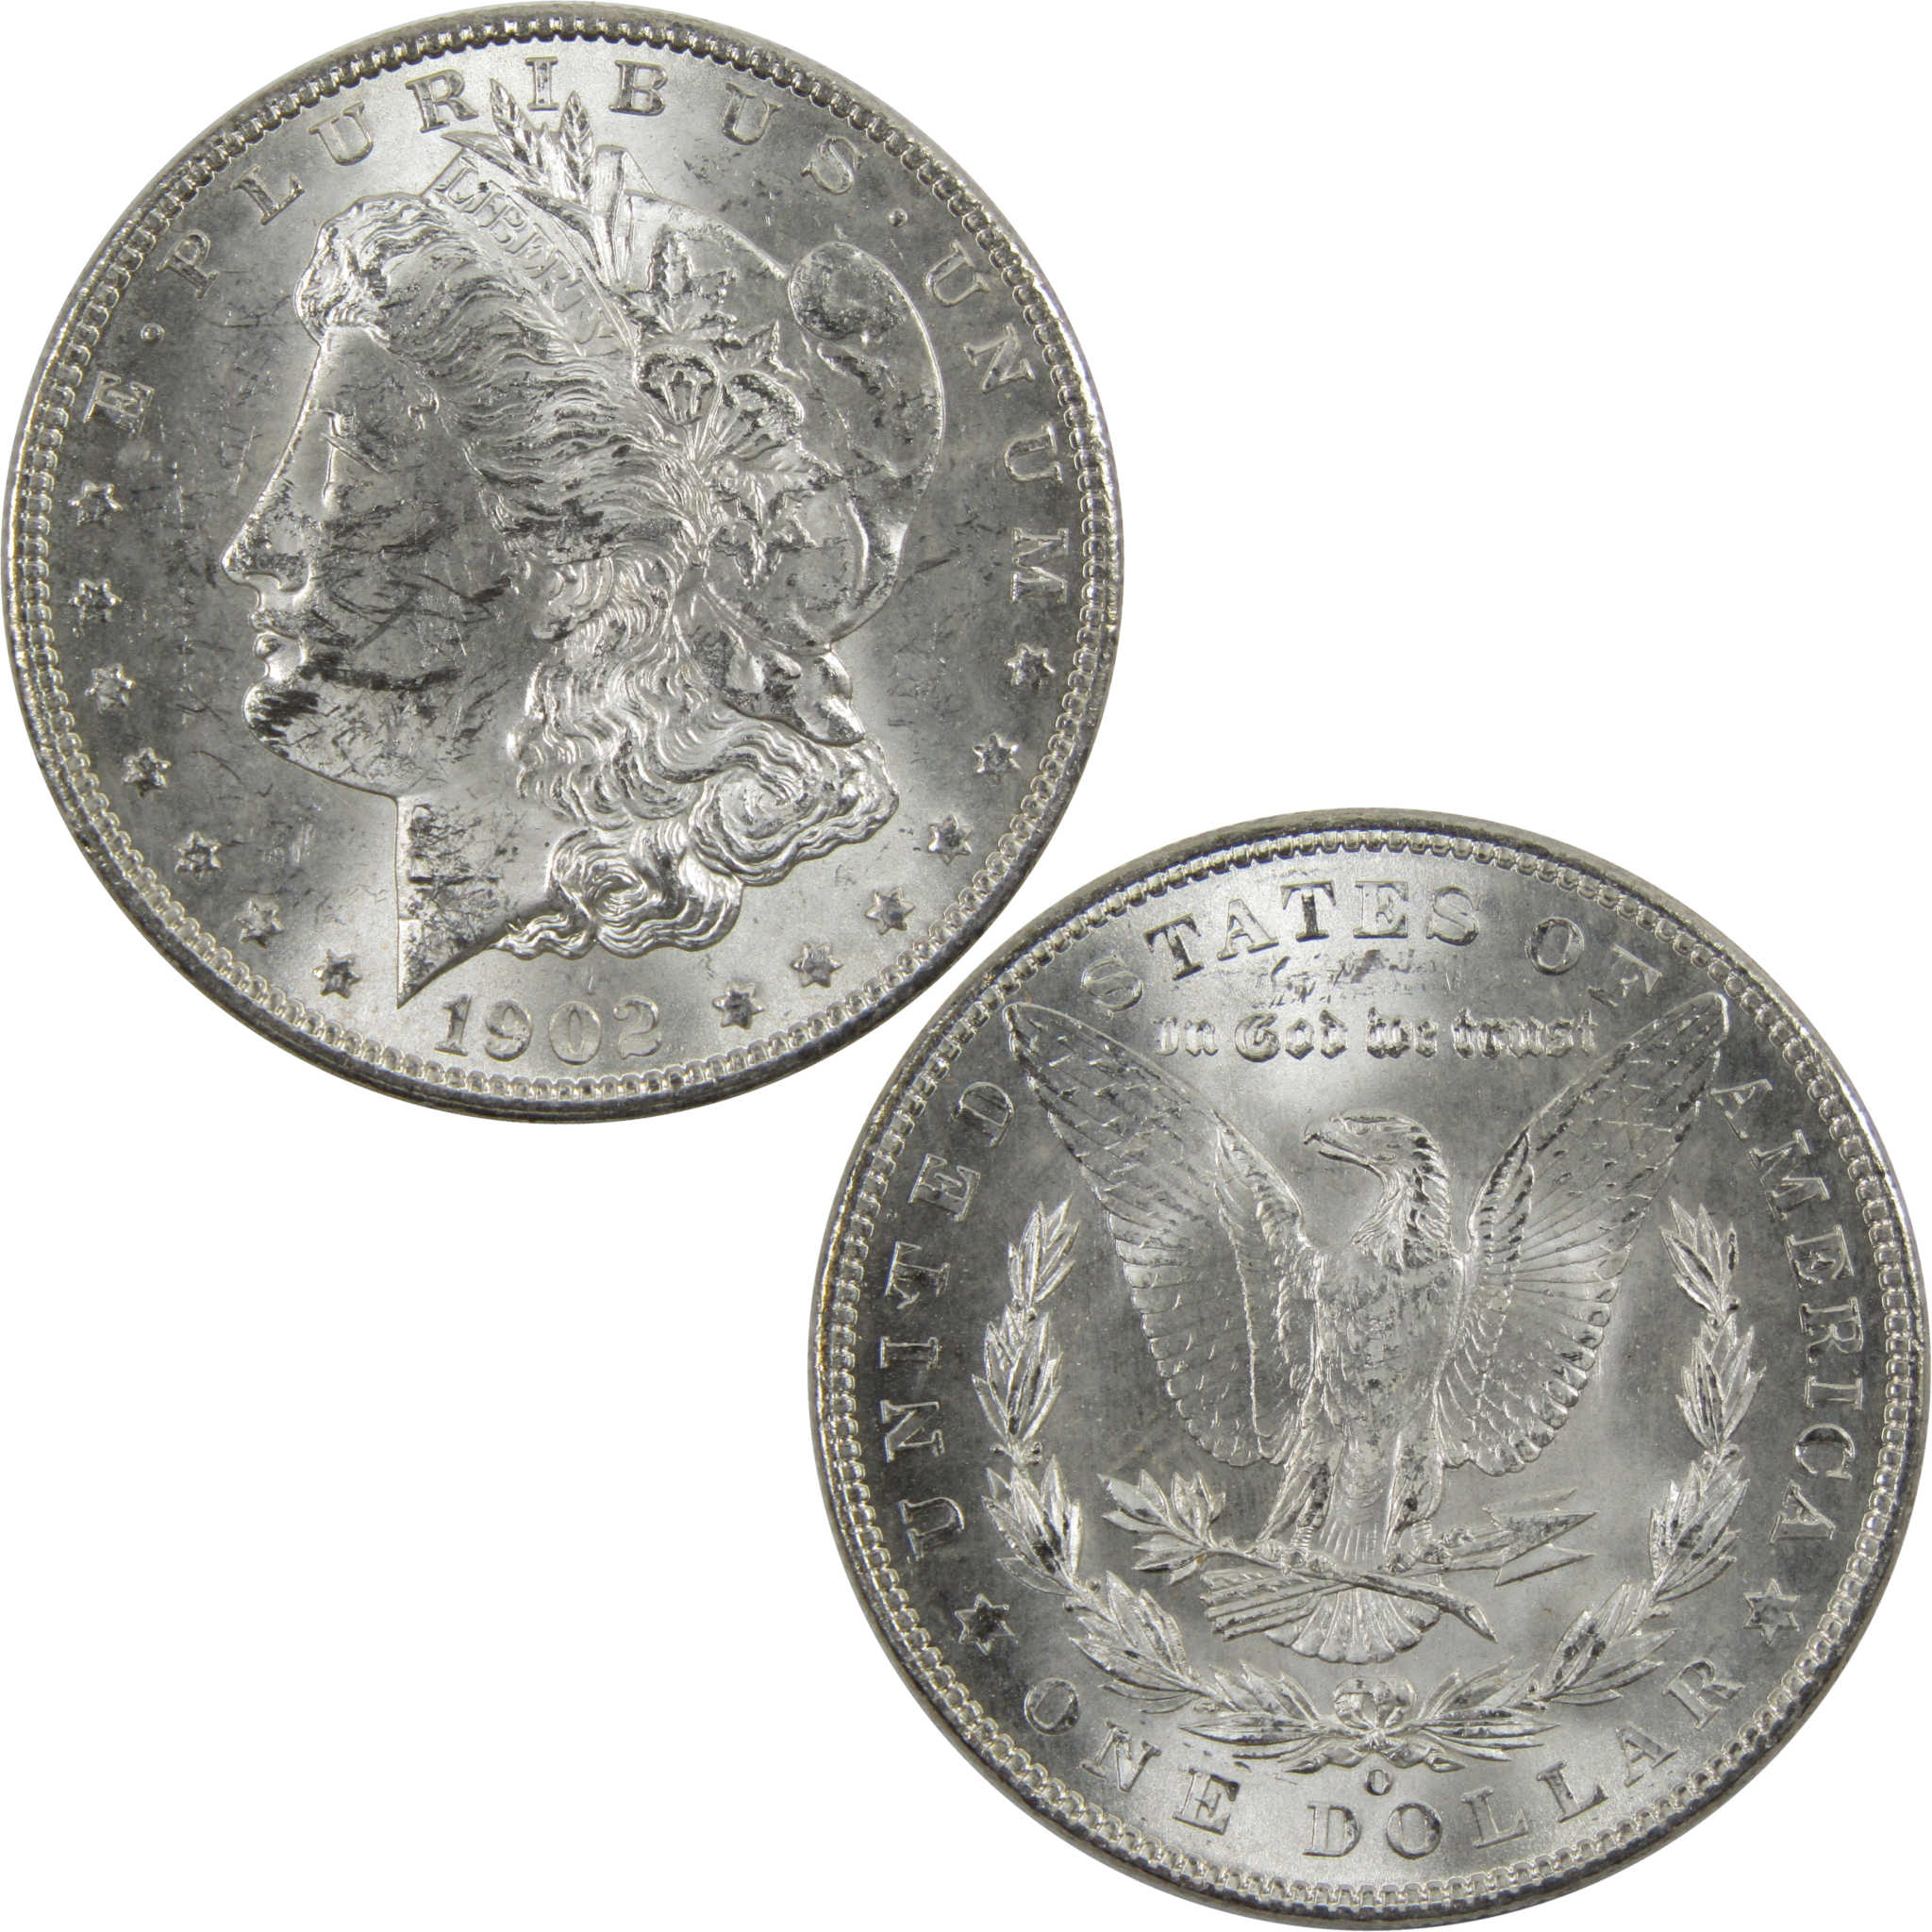 1902 O Morgan Dollar BU Uncirculated 90% Silver $1 Coin SKU:I6037 - Morgan coin - Morgan silver dollar - Morgan silver dollar for sale - Profile Coins &amp; Collectibles